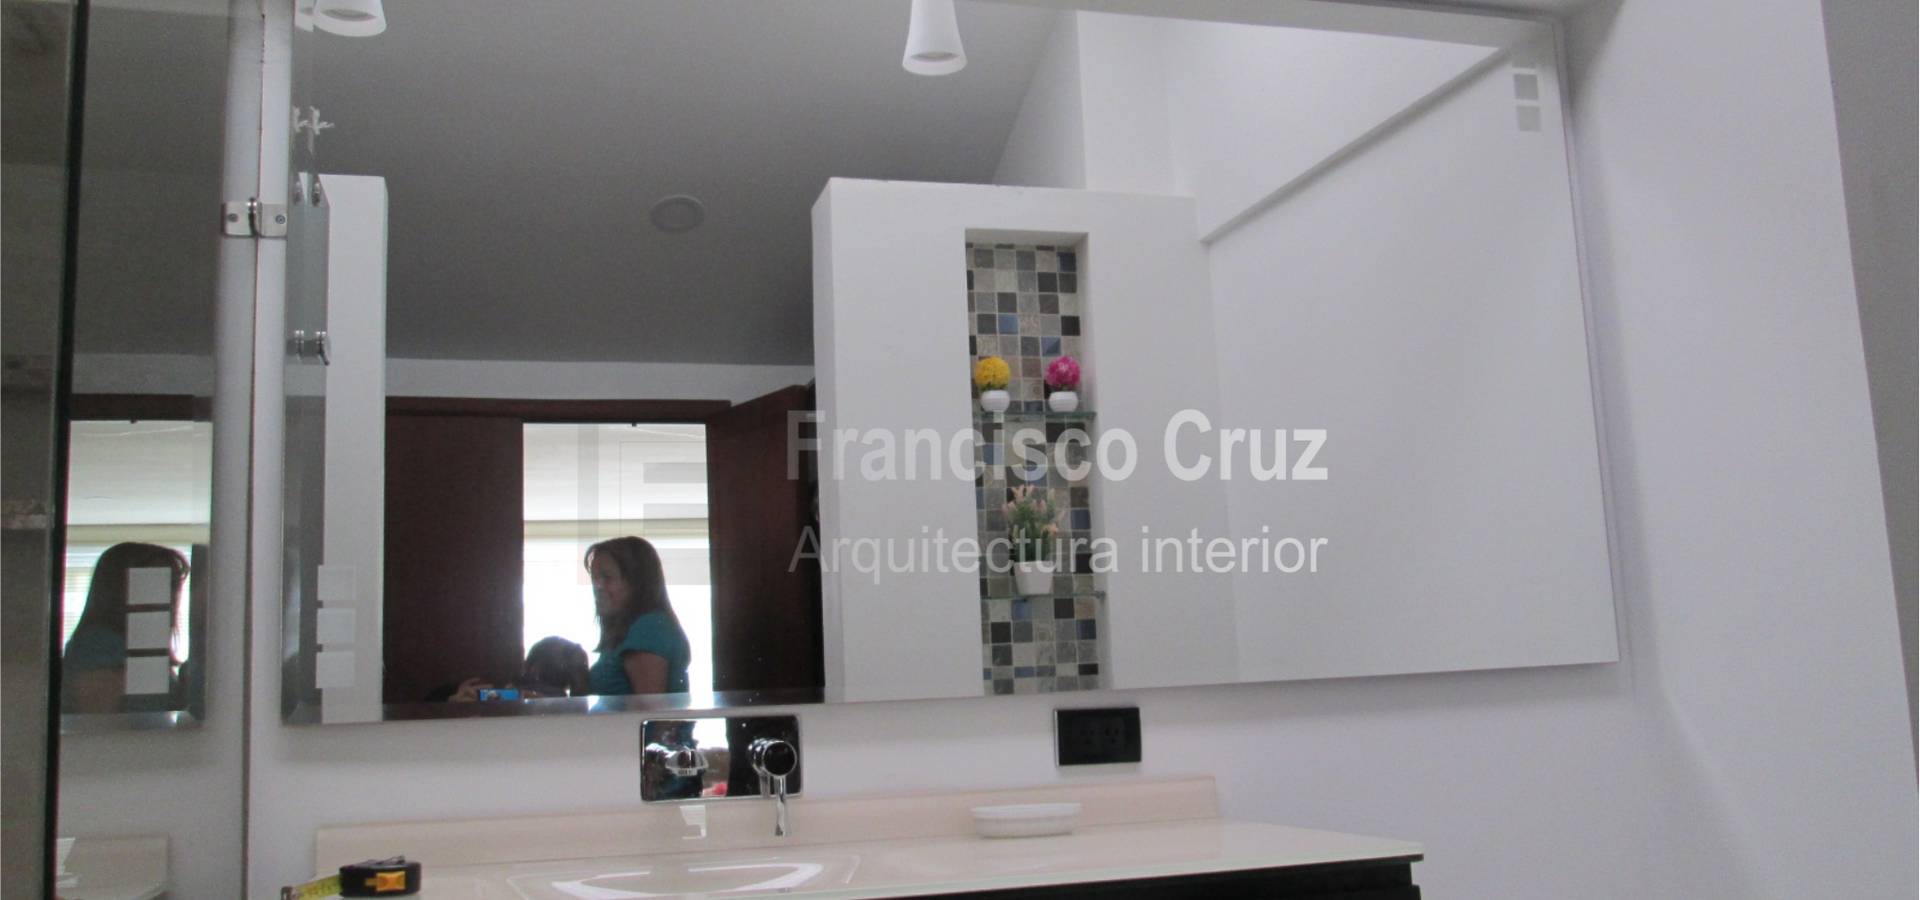 Francisco Cruz Arquitectura interior